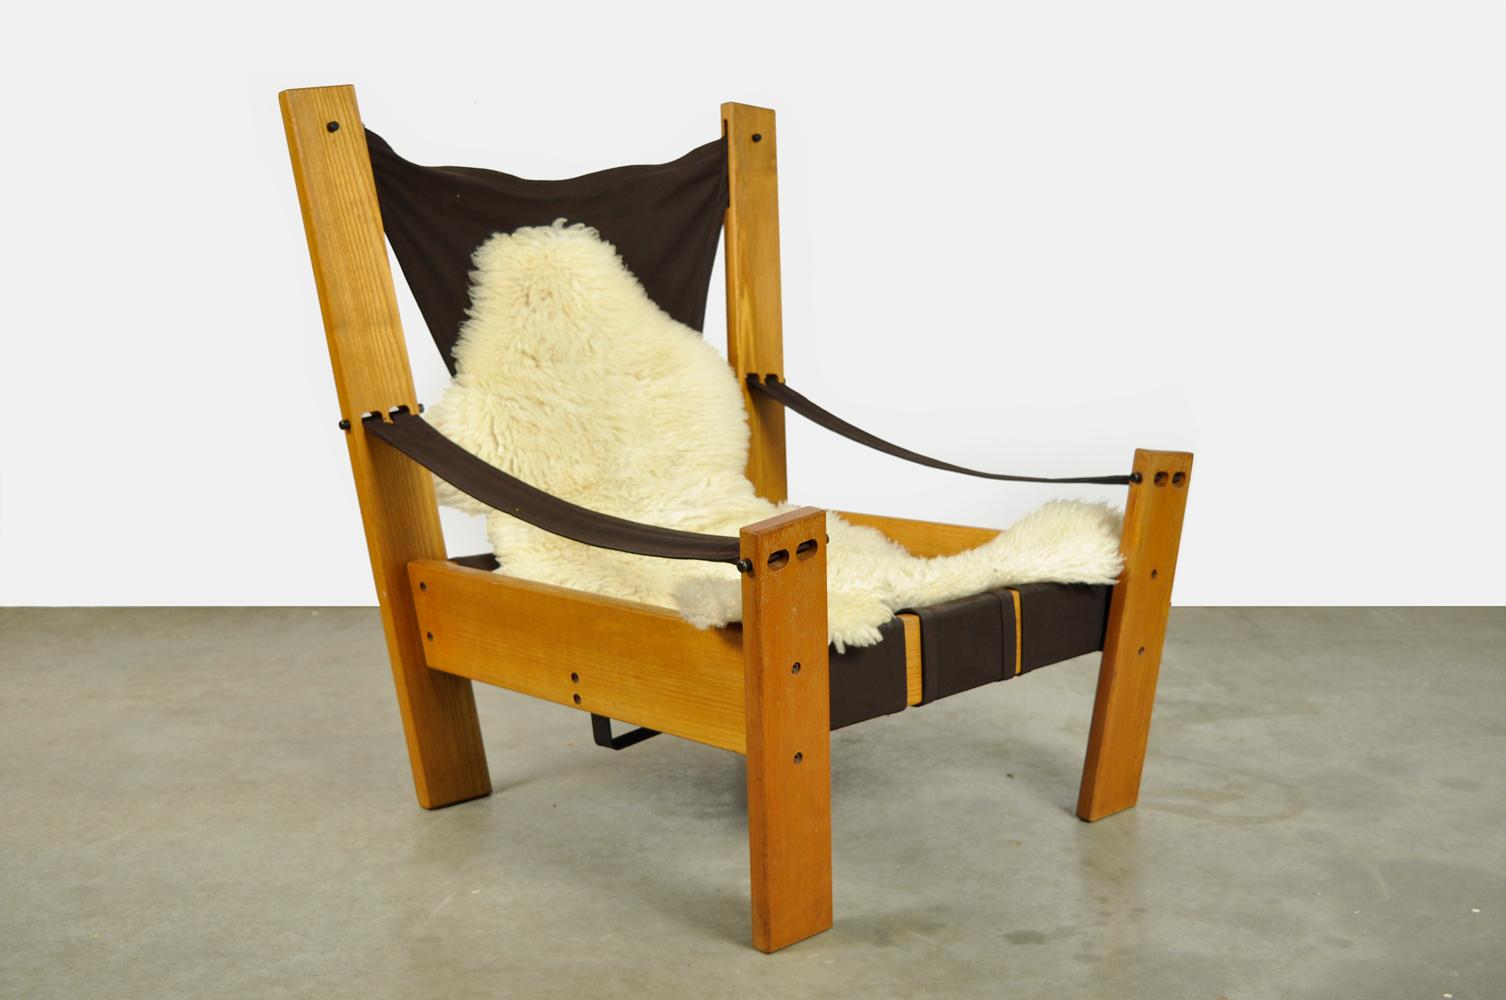 Fauteuil de salon hollandais spécial conçu par John de Haard et produit par Gebroeders Jonkers, années 1960. Ce fauteuil unique est constitué d'un cadre en bois de pin et d'une assise en toile suspendue. Les accoudoirs 